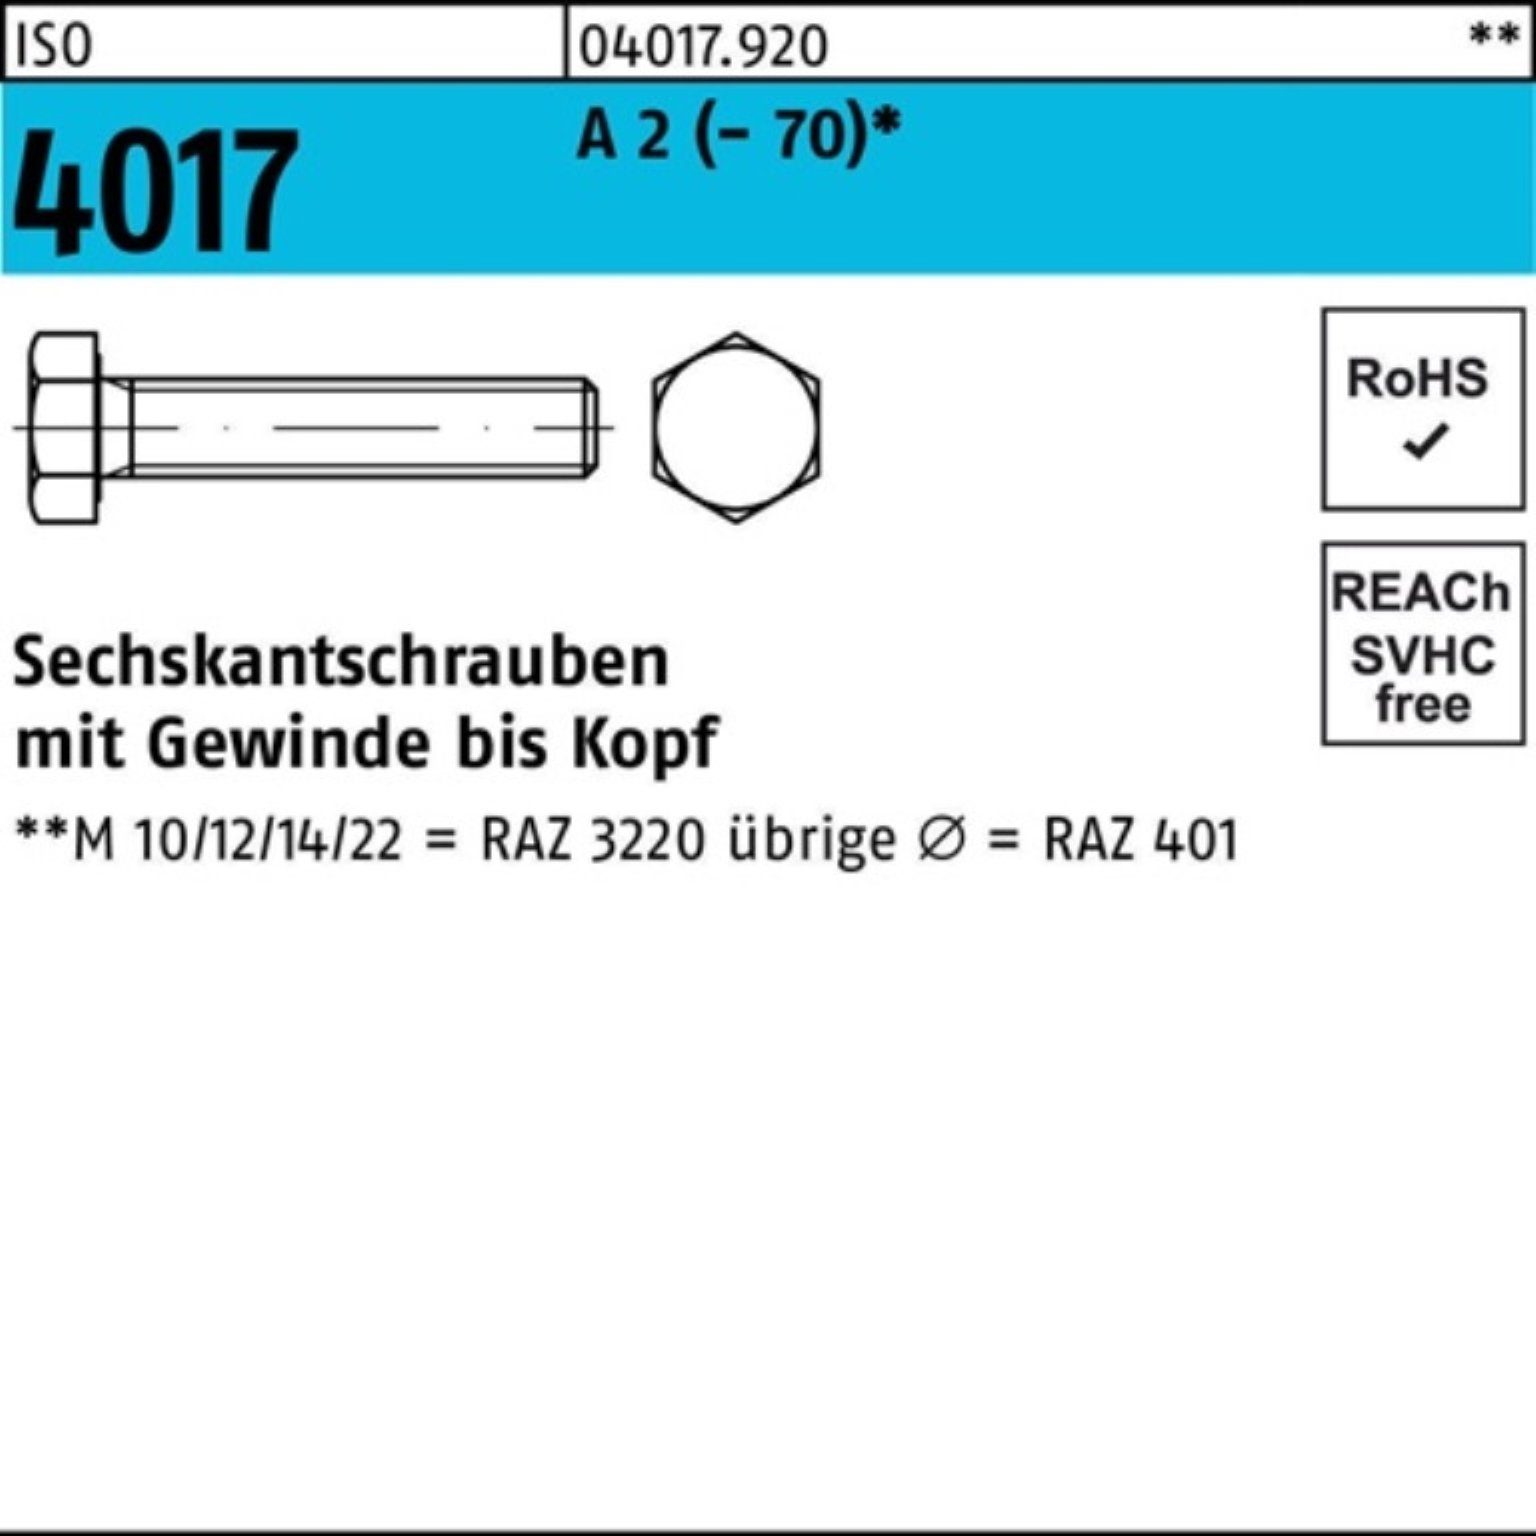 Bufab Sechskantschraube 500er Pack Sechskantschraube ISO 4017 VG M5x 14 A 2 (70) 500 Stück